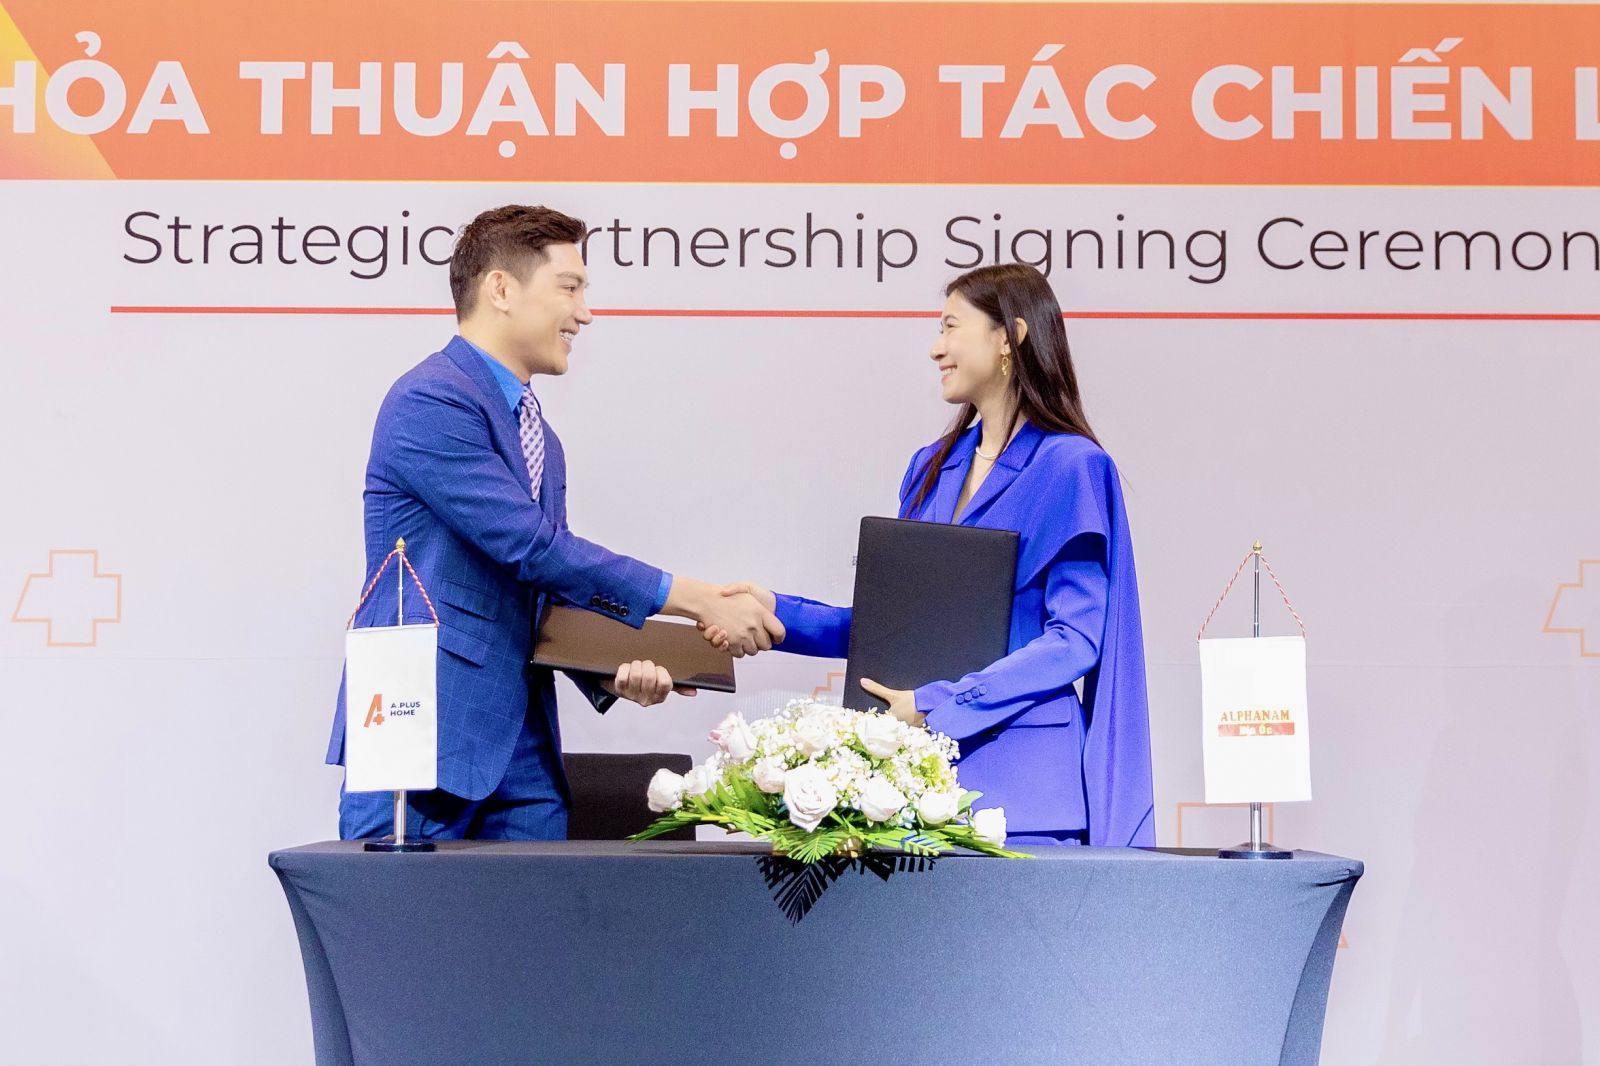 Ngày 16/4/2021, Beta Group và Tập đoàn Alphanam đã tiến hành ký kết thỏa thuận hợp tác chiến lược phát triển các chuỗi căn hộ A.Plus Home, hứa hẹn sẽ triển khai rộng rãi tại Việt Nam trong thời gian tới.